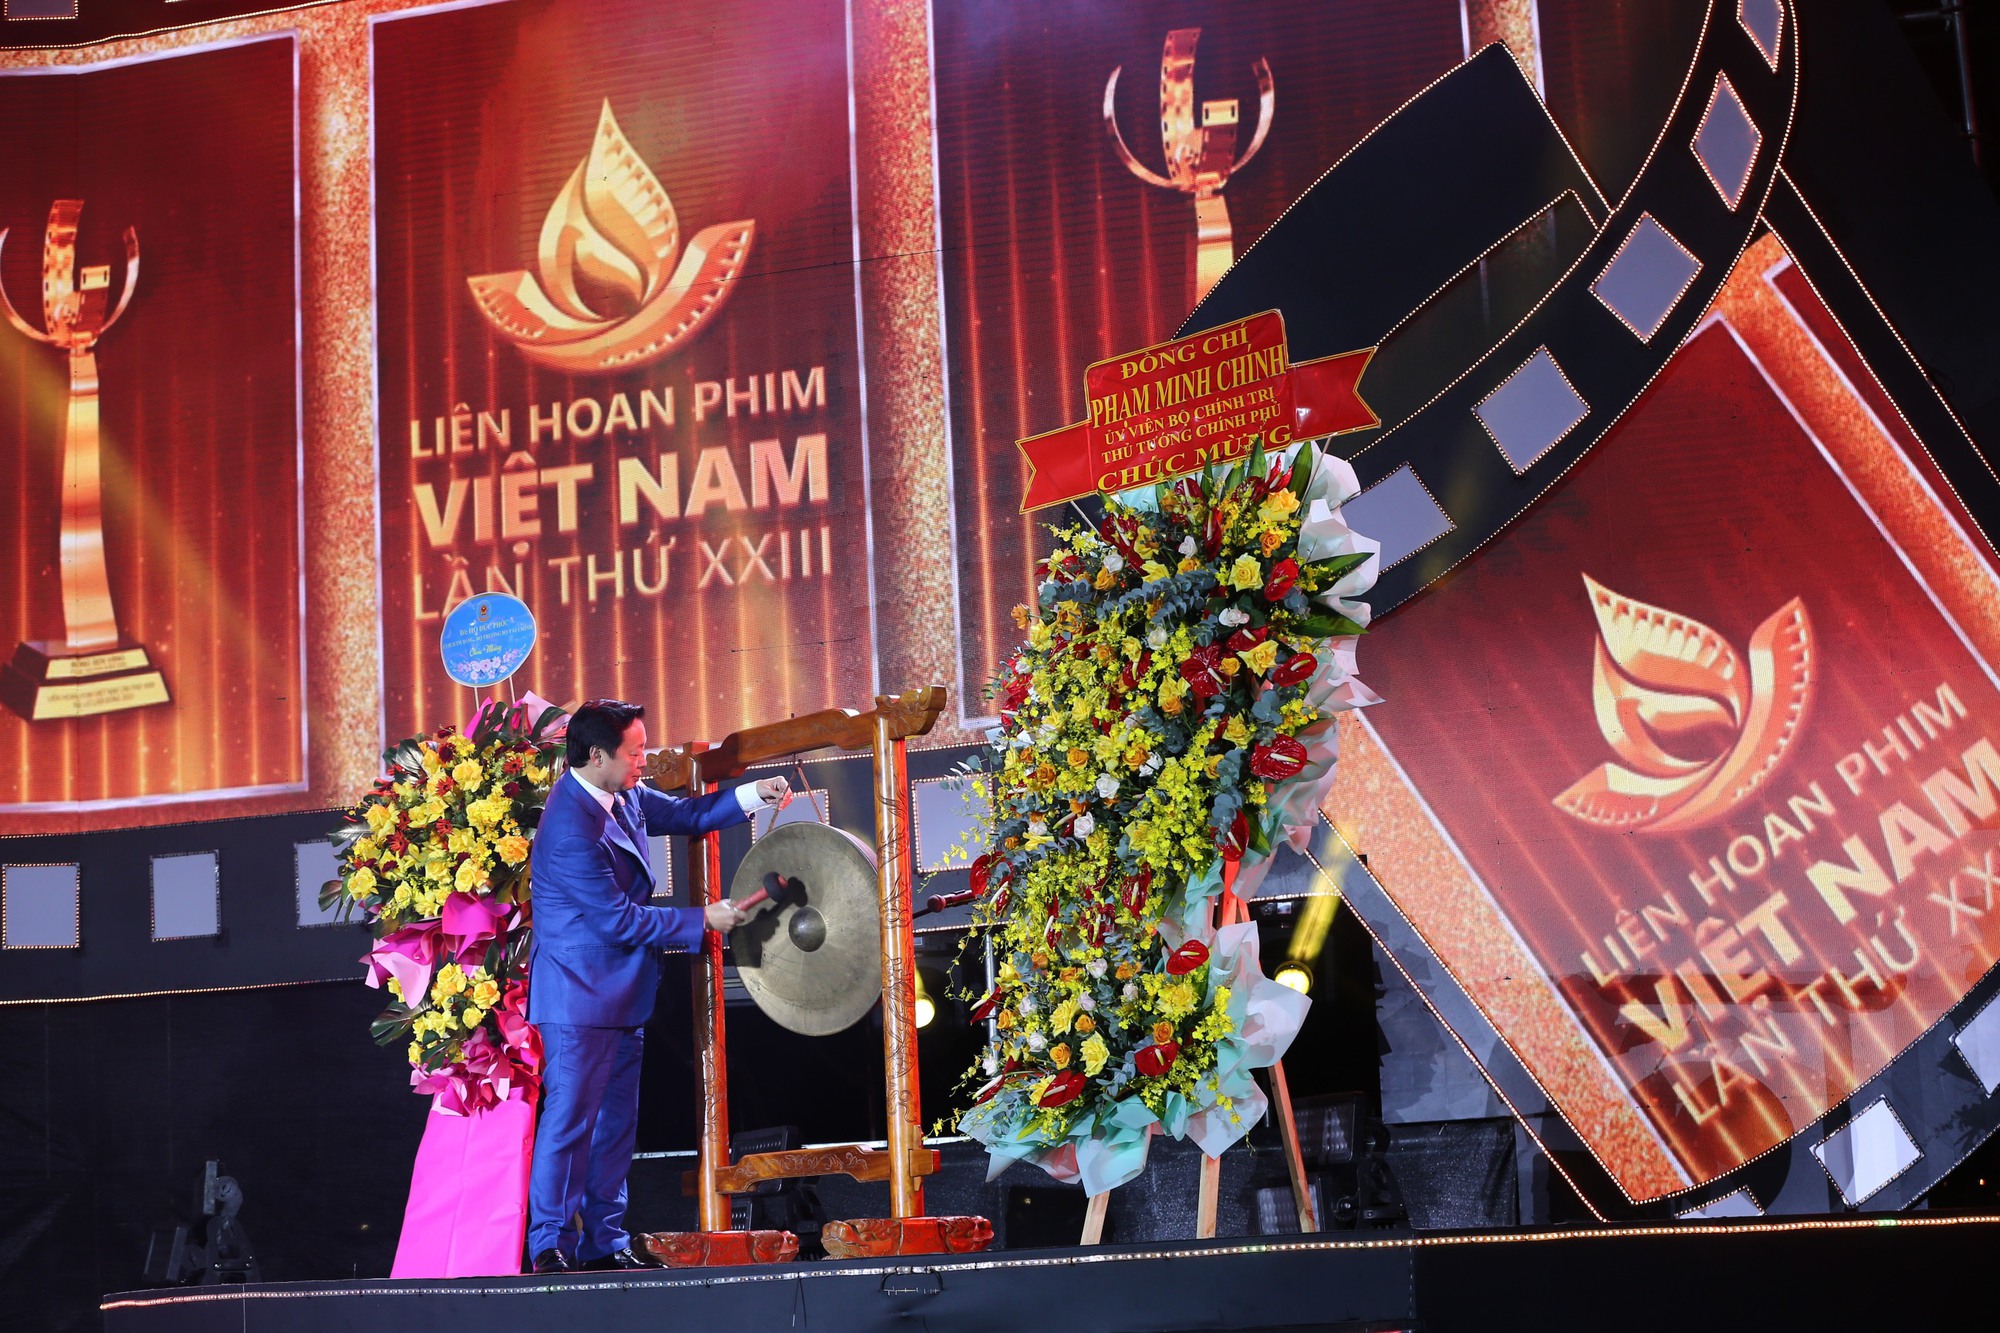 Hàng ngàn người dân Đà Lạt đến xem liên hoan phim Việt Nam dưới cái lạnh 17 độ - Ảnh 1.